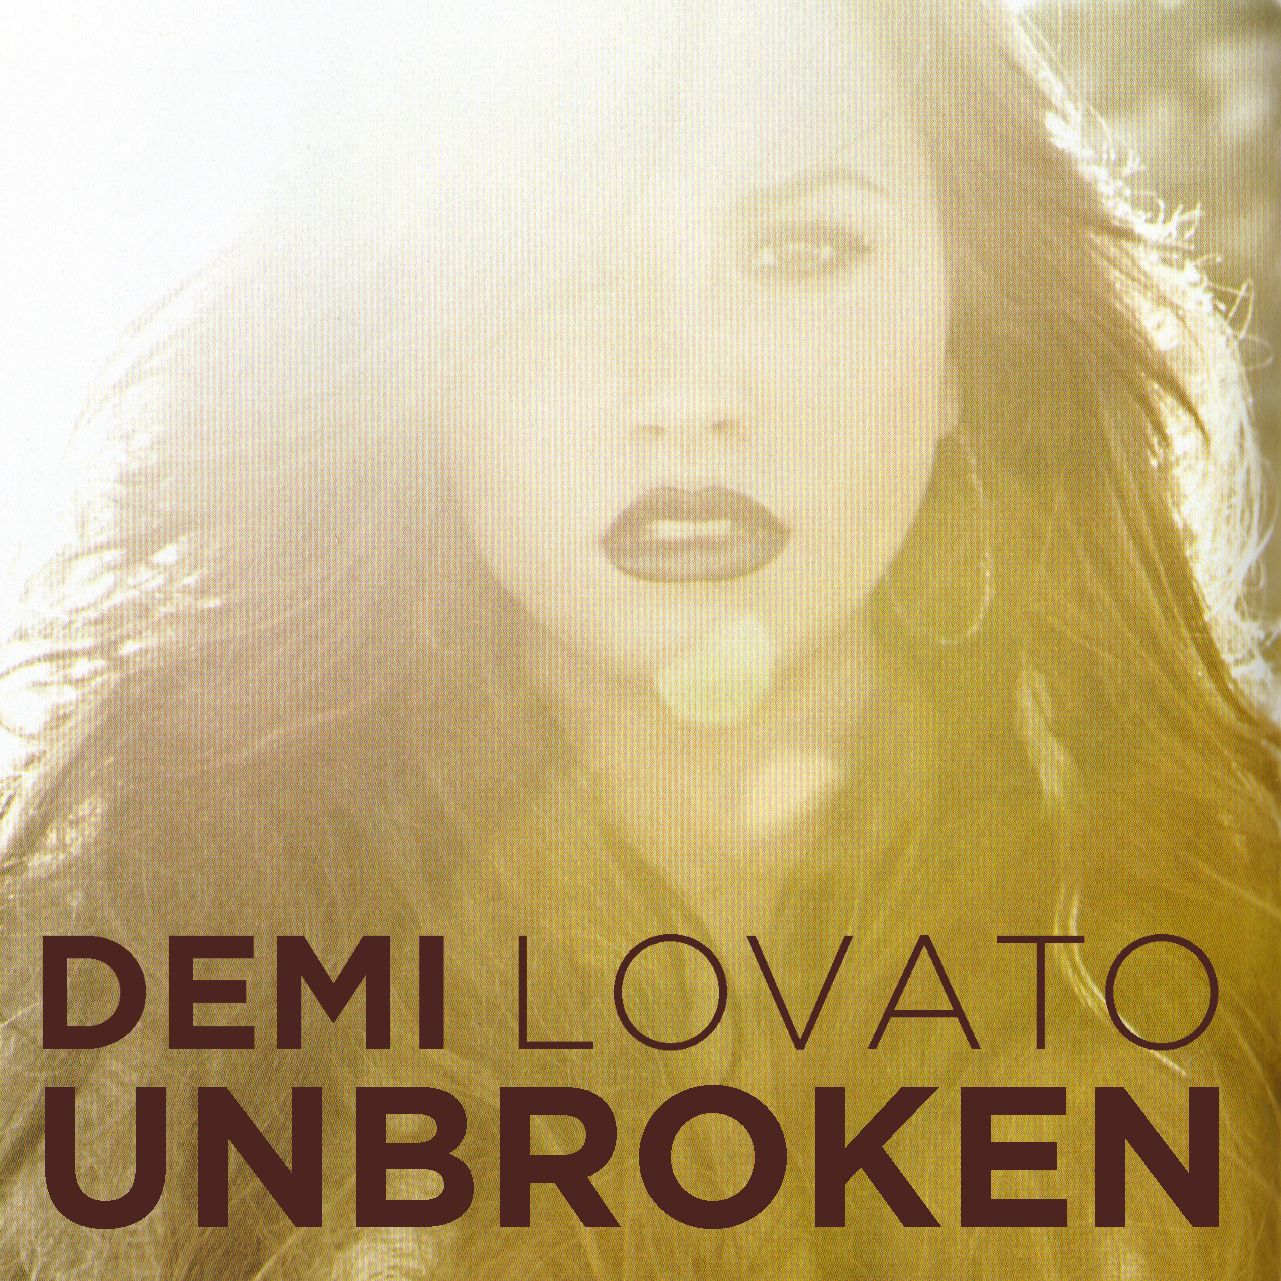 lilbadboy0: Demi Lovato - Unbroken (Era)